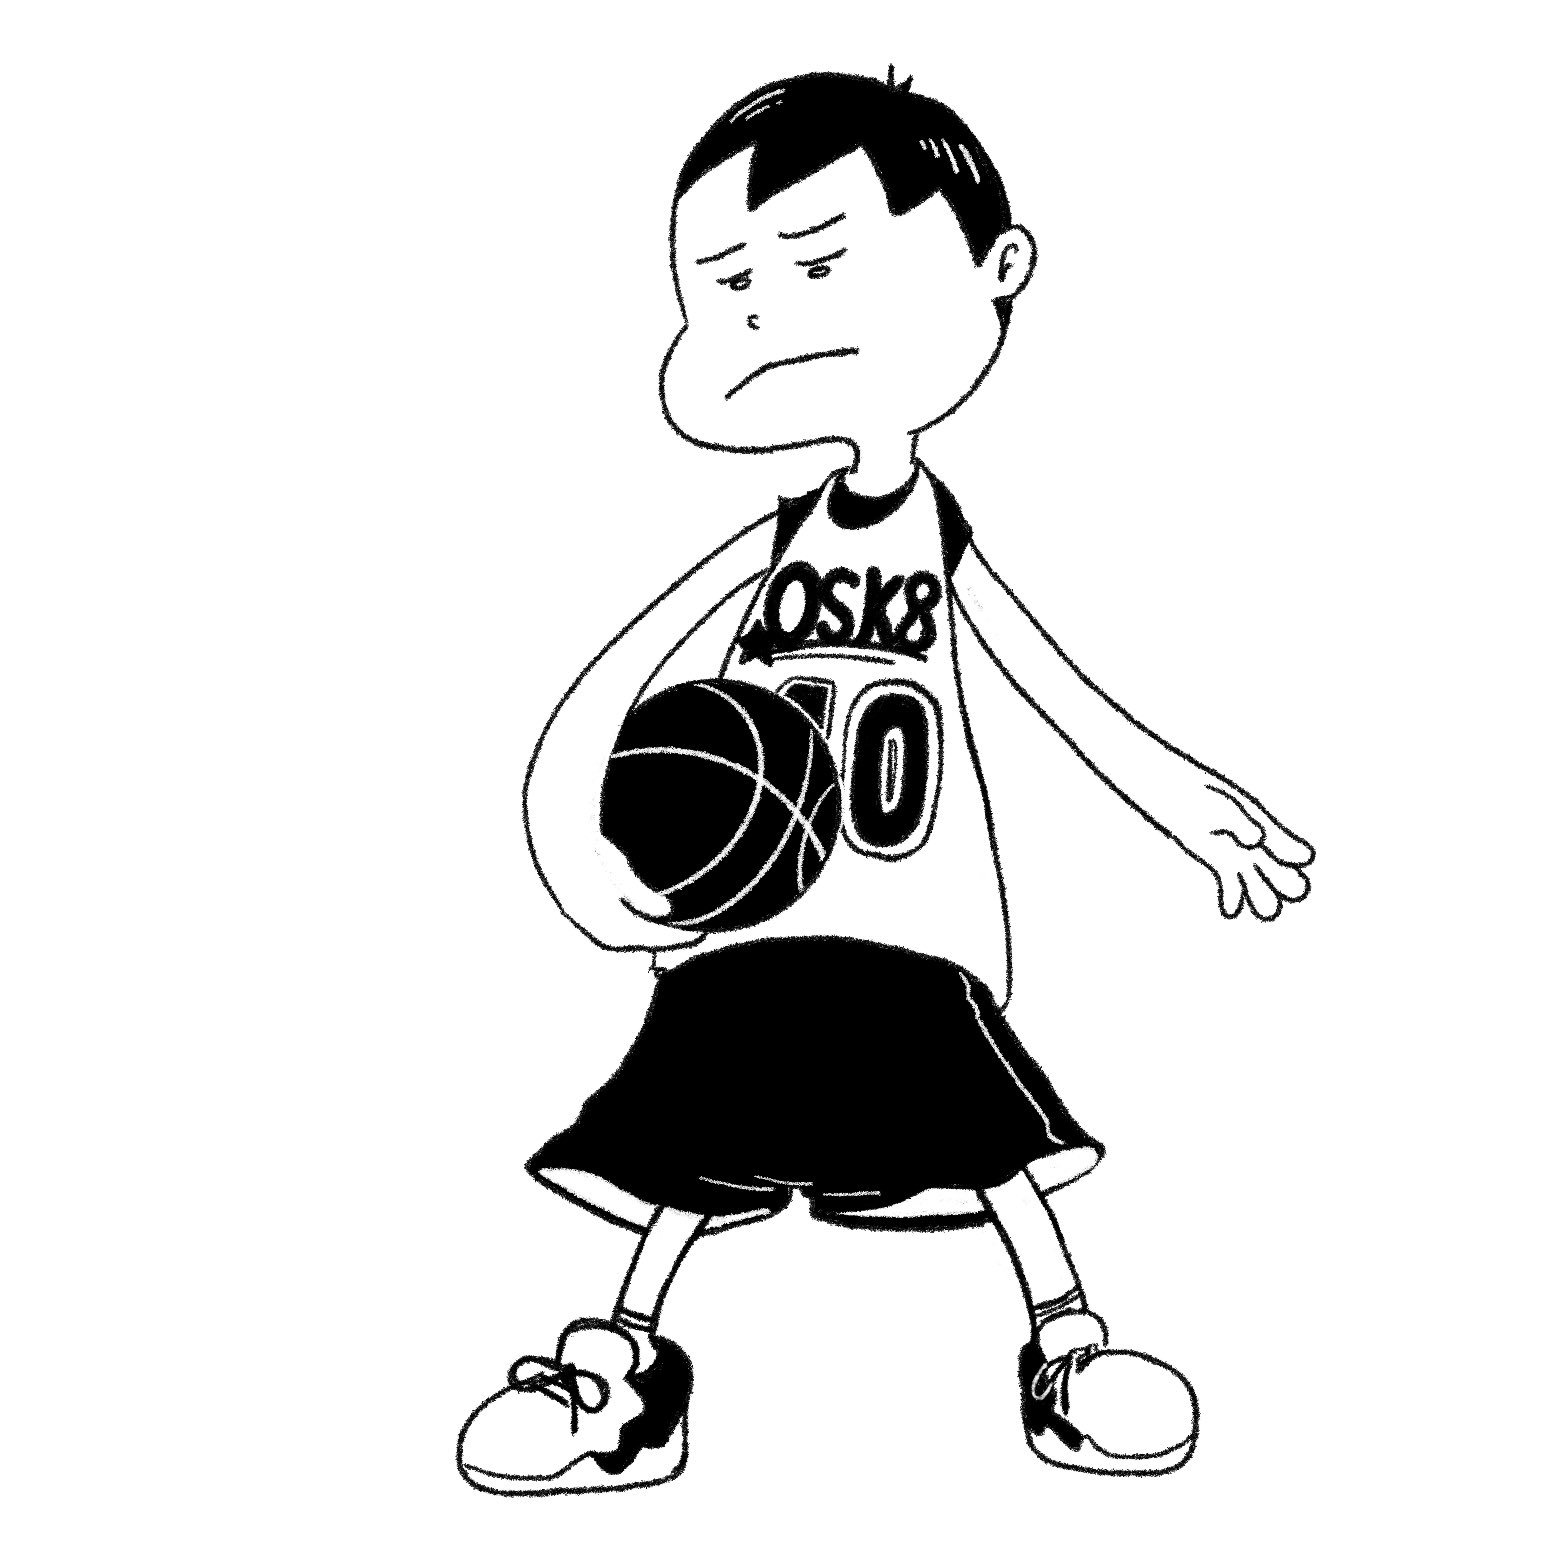 Sato Yugo バスケを始めた息子がなんだかカッコイイ イラスト バスケ 小3 T Co Beo4q6zvu2 Twitter